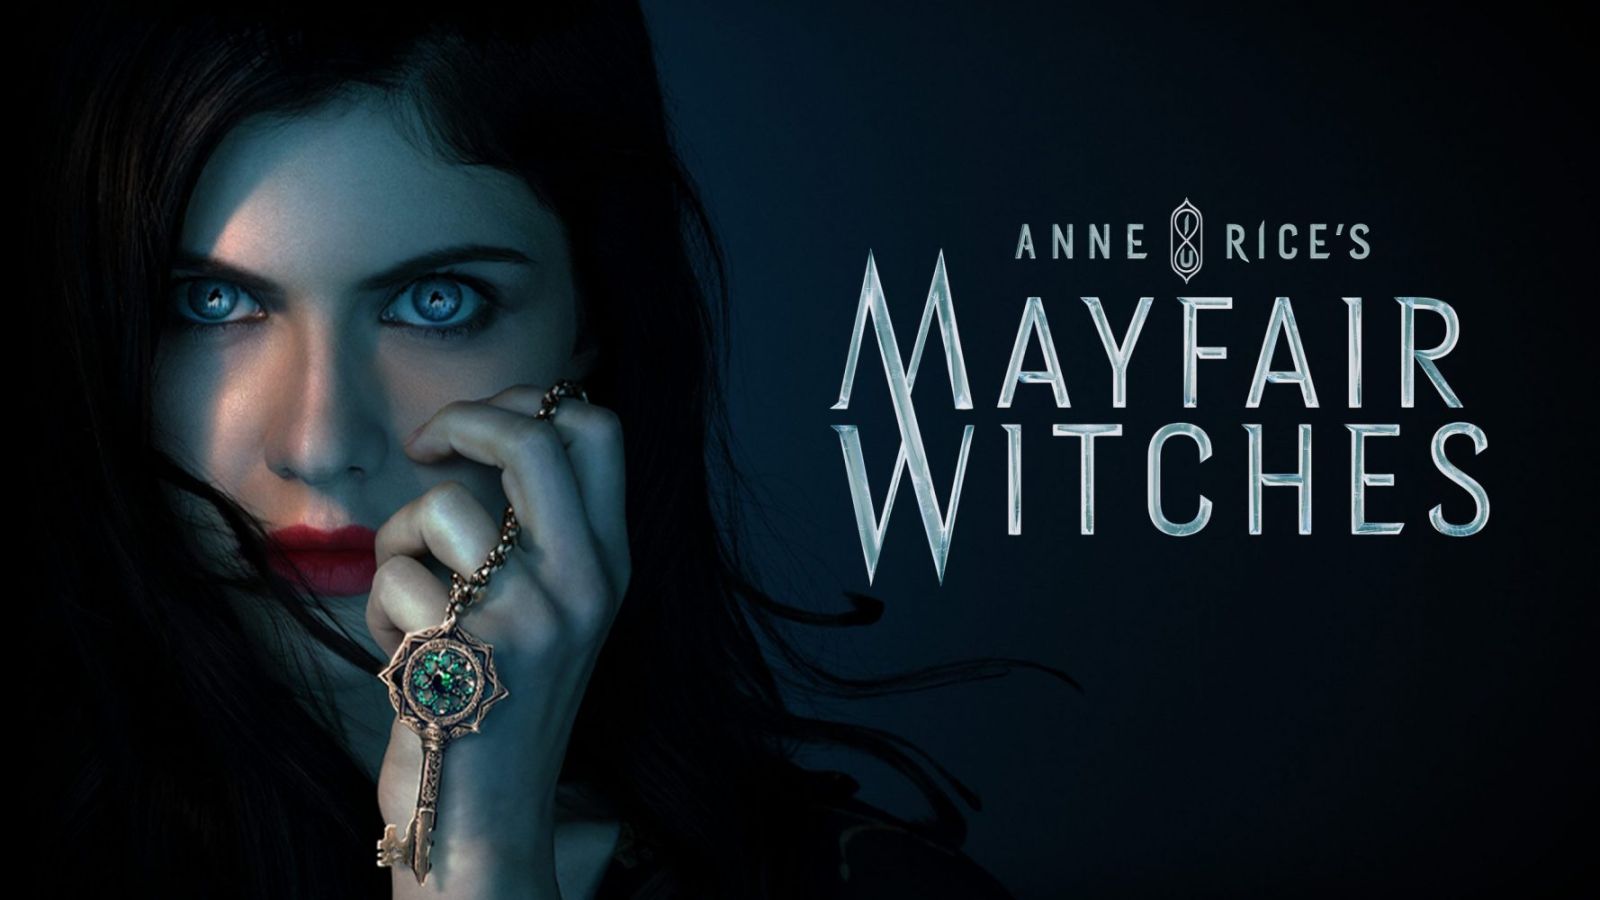 Phù thủy mayfair - Mayfair witches